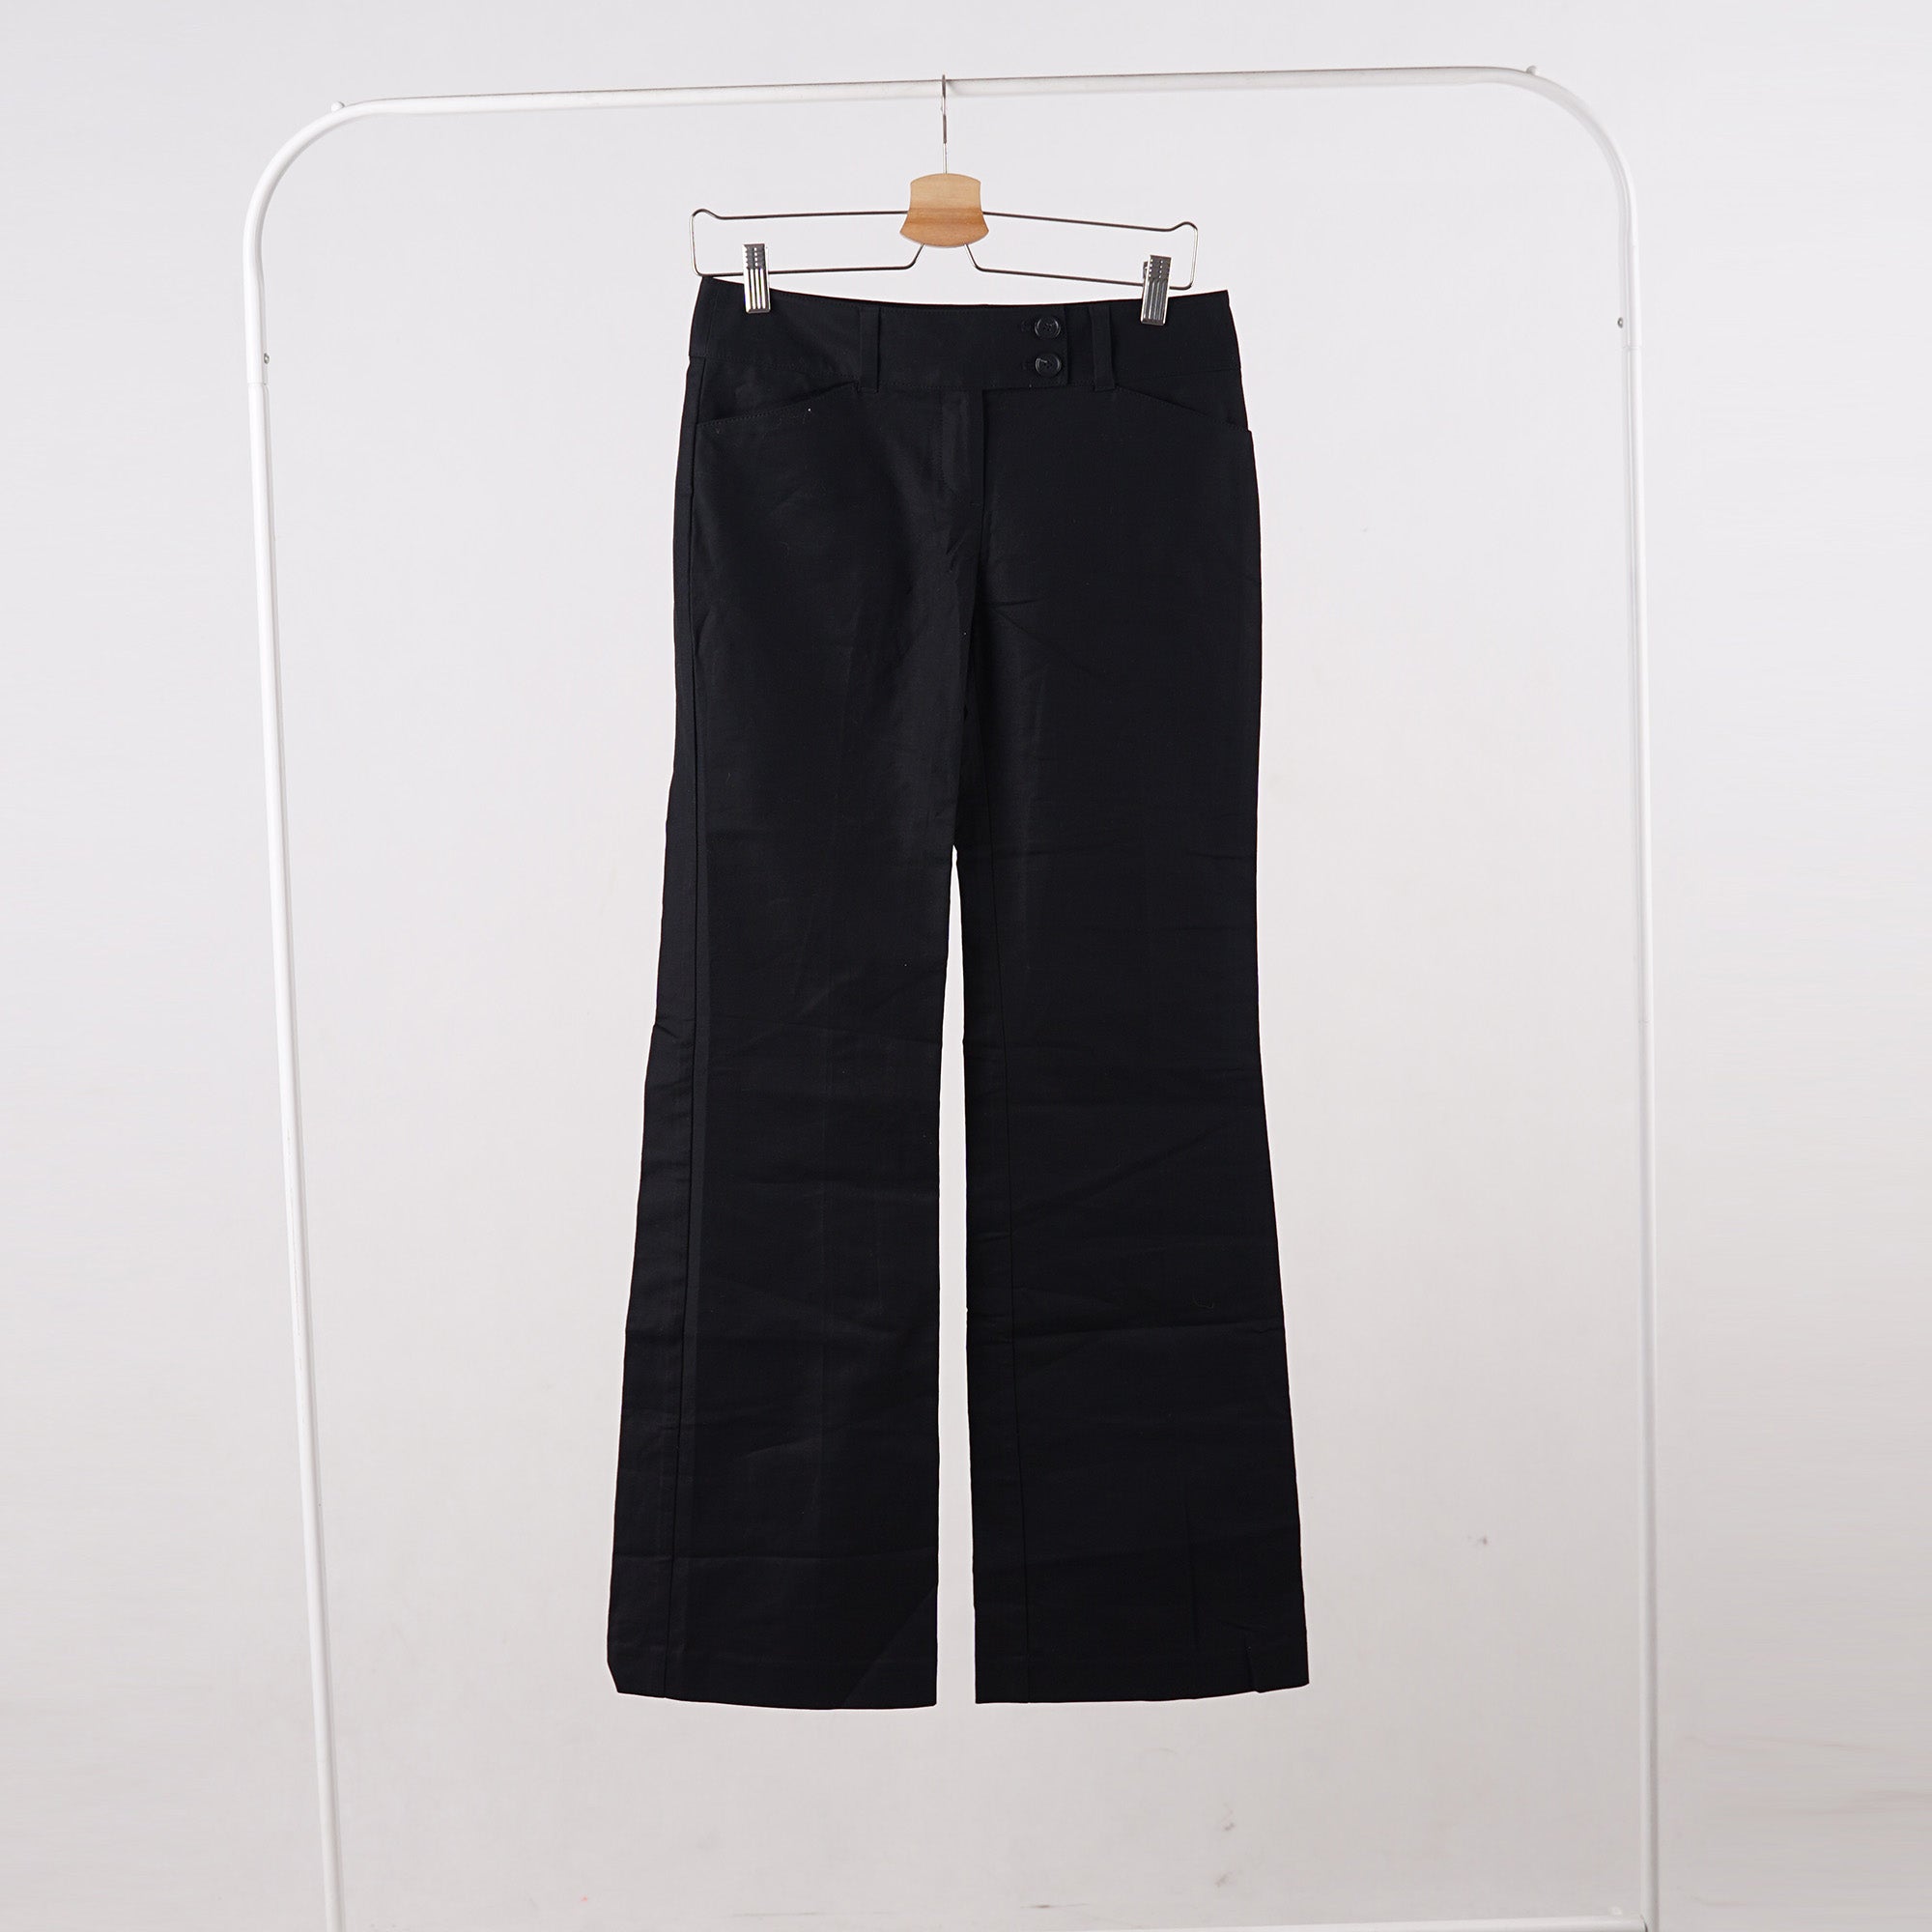 Celana Panjang Wanita - Curvy Women Pants (MAL 10)